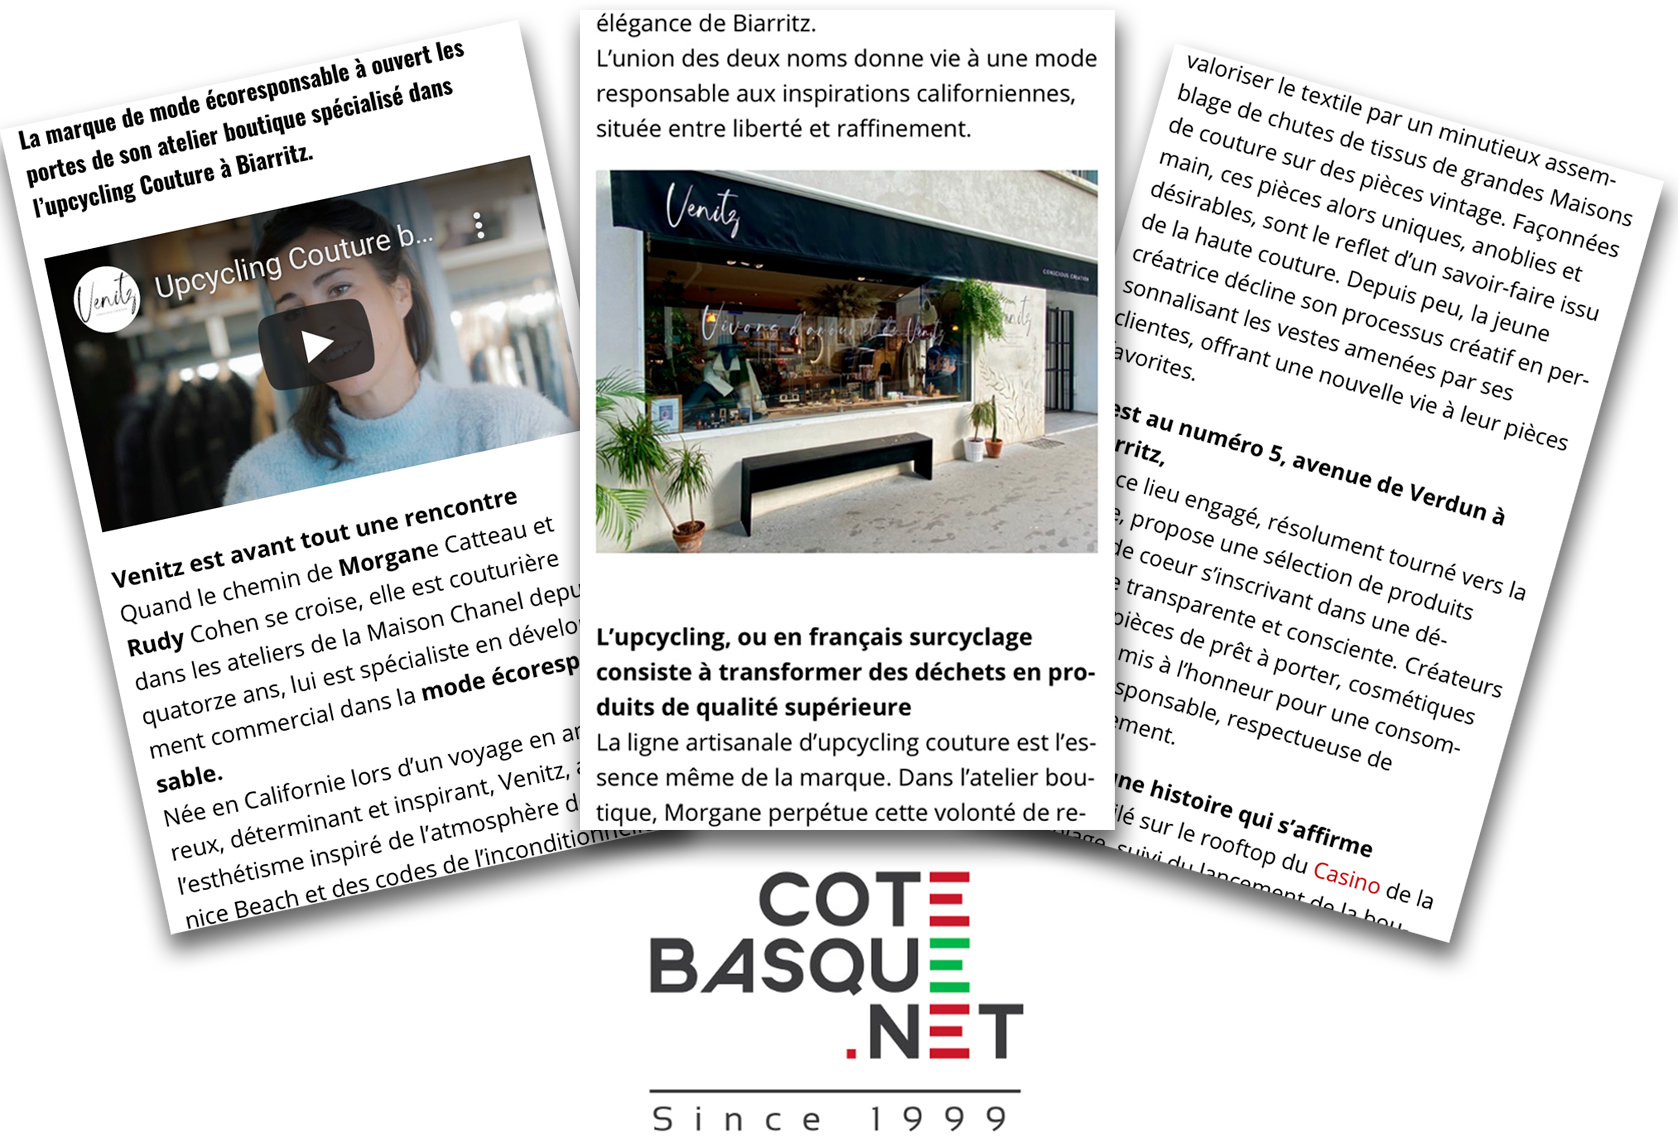 Article cote basque